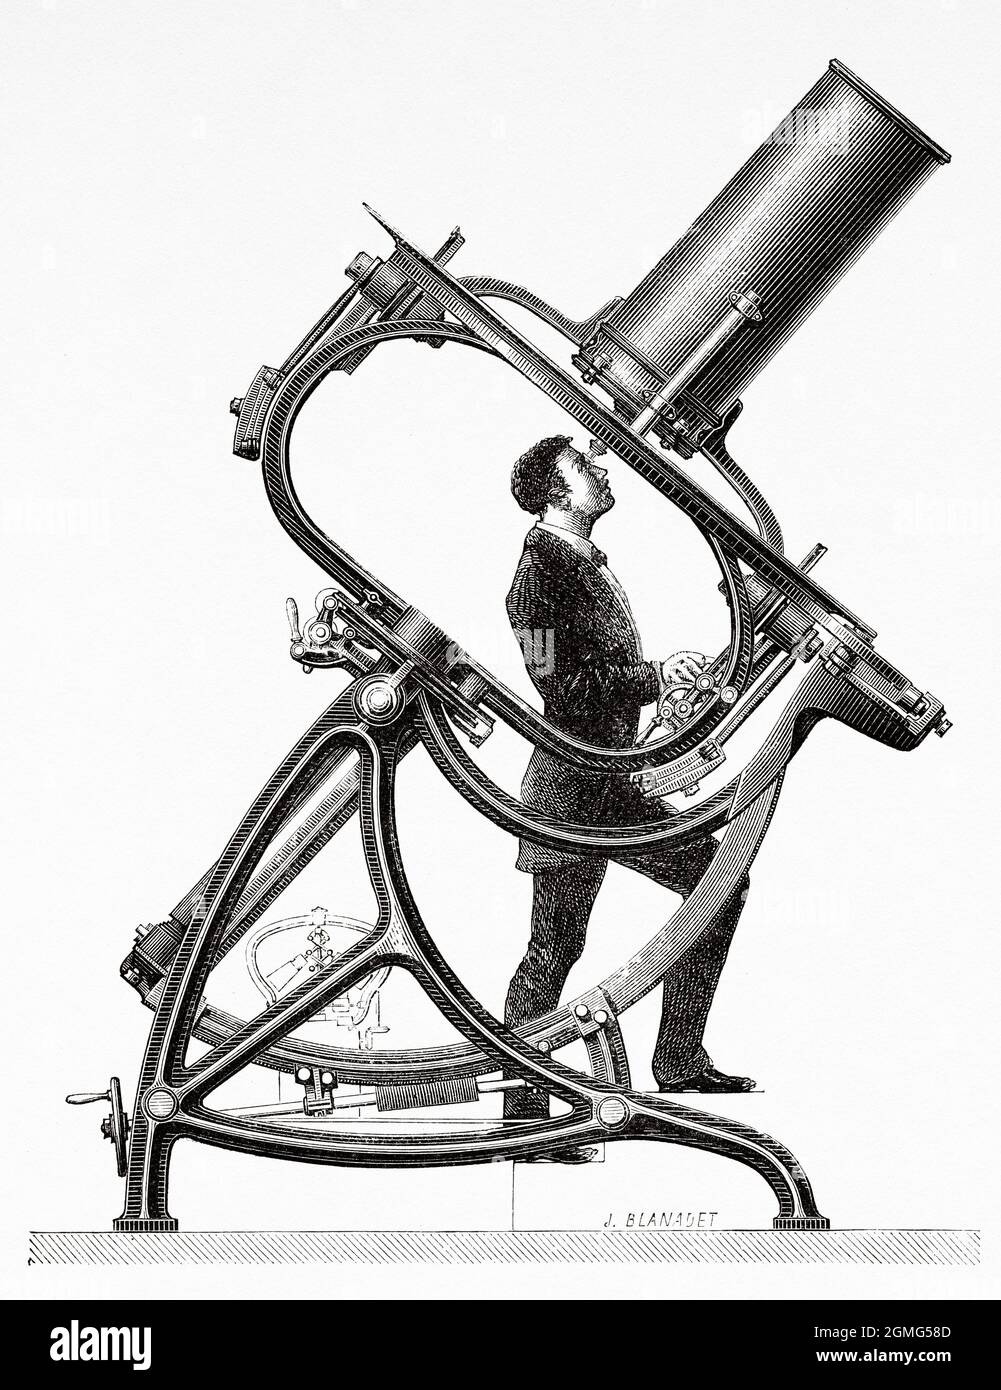 Télescope à courte focale, par M. Jaubert. Paris, Observatoire astronomique Trocadéro. Ancienne illustration gravée du XIXe siècle de la Ilustración Artística 1882 Banque D'Images